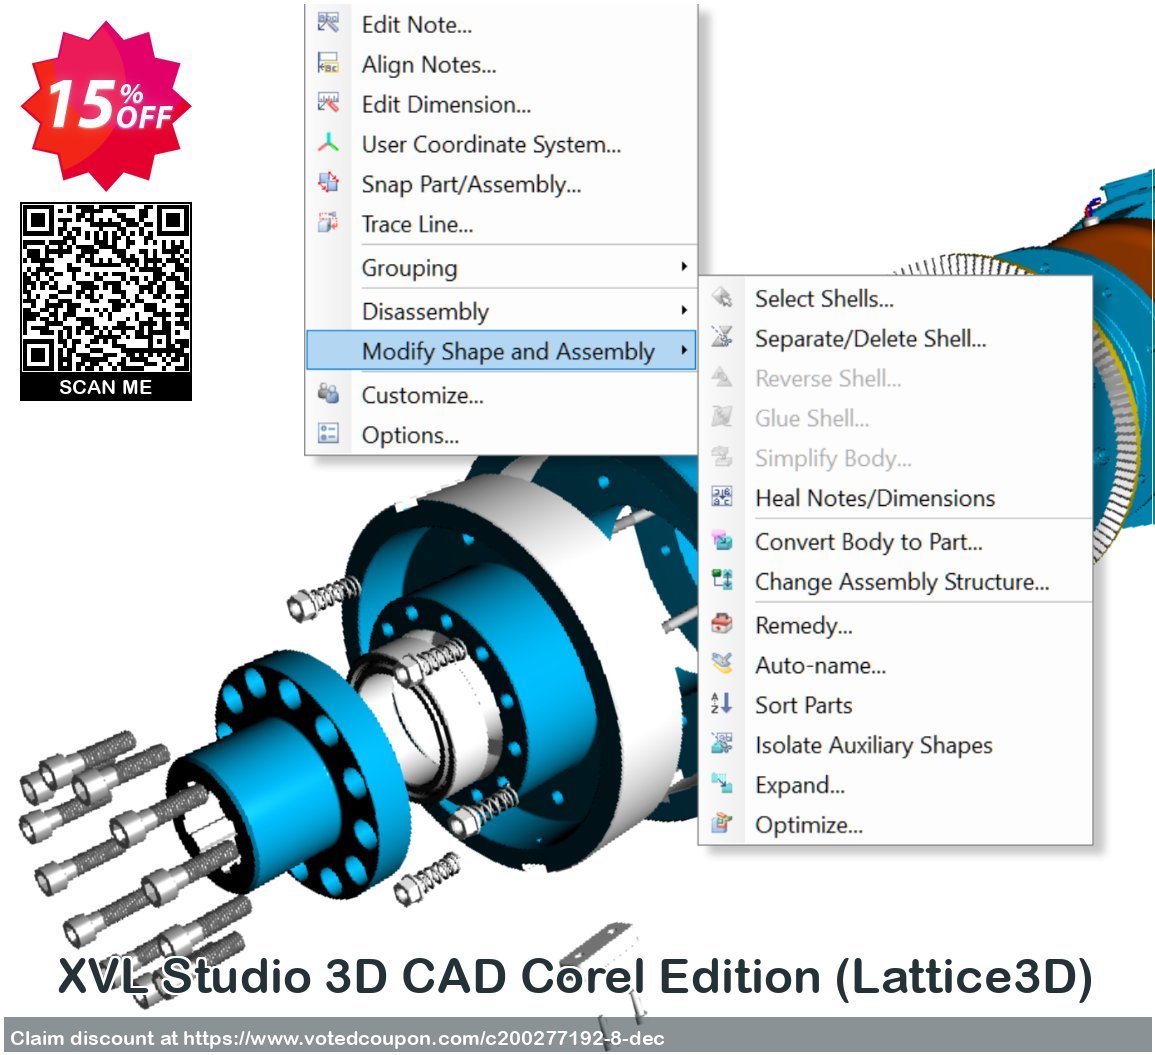 XVL Studio 3D CAD Corel Edition, Lattice3D 